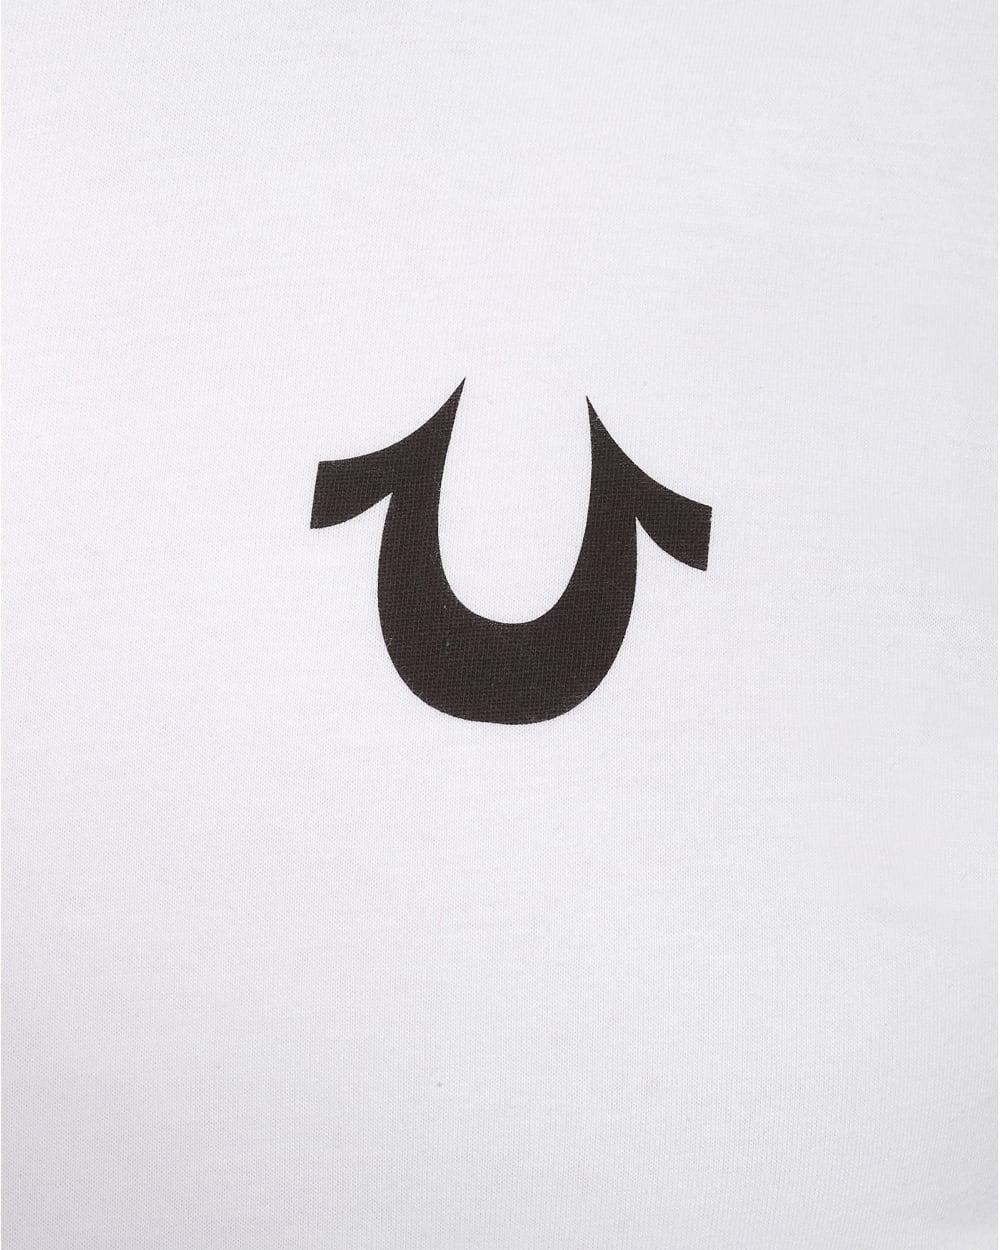 True Religon Logo - True Religion Jeans Mens Traditional Logo T-Shirt, Plain White Tee